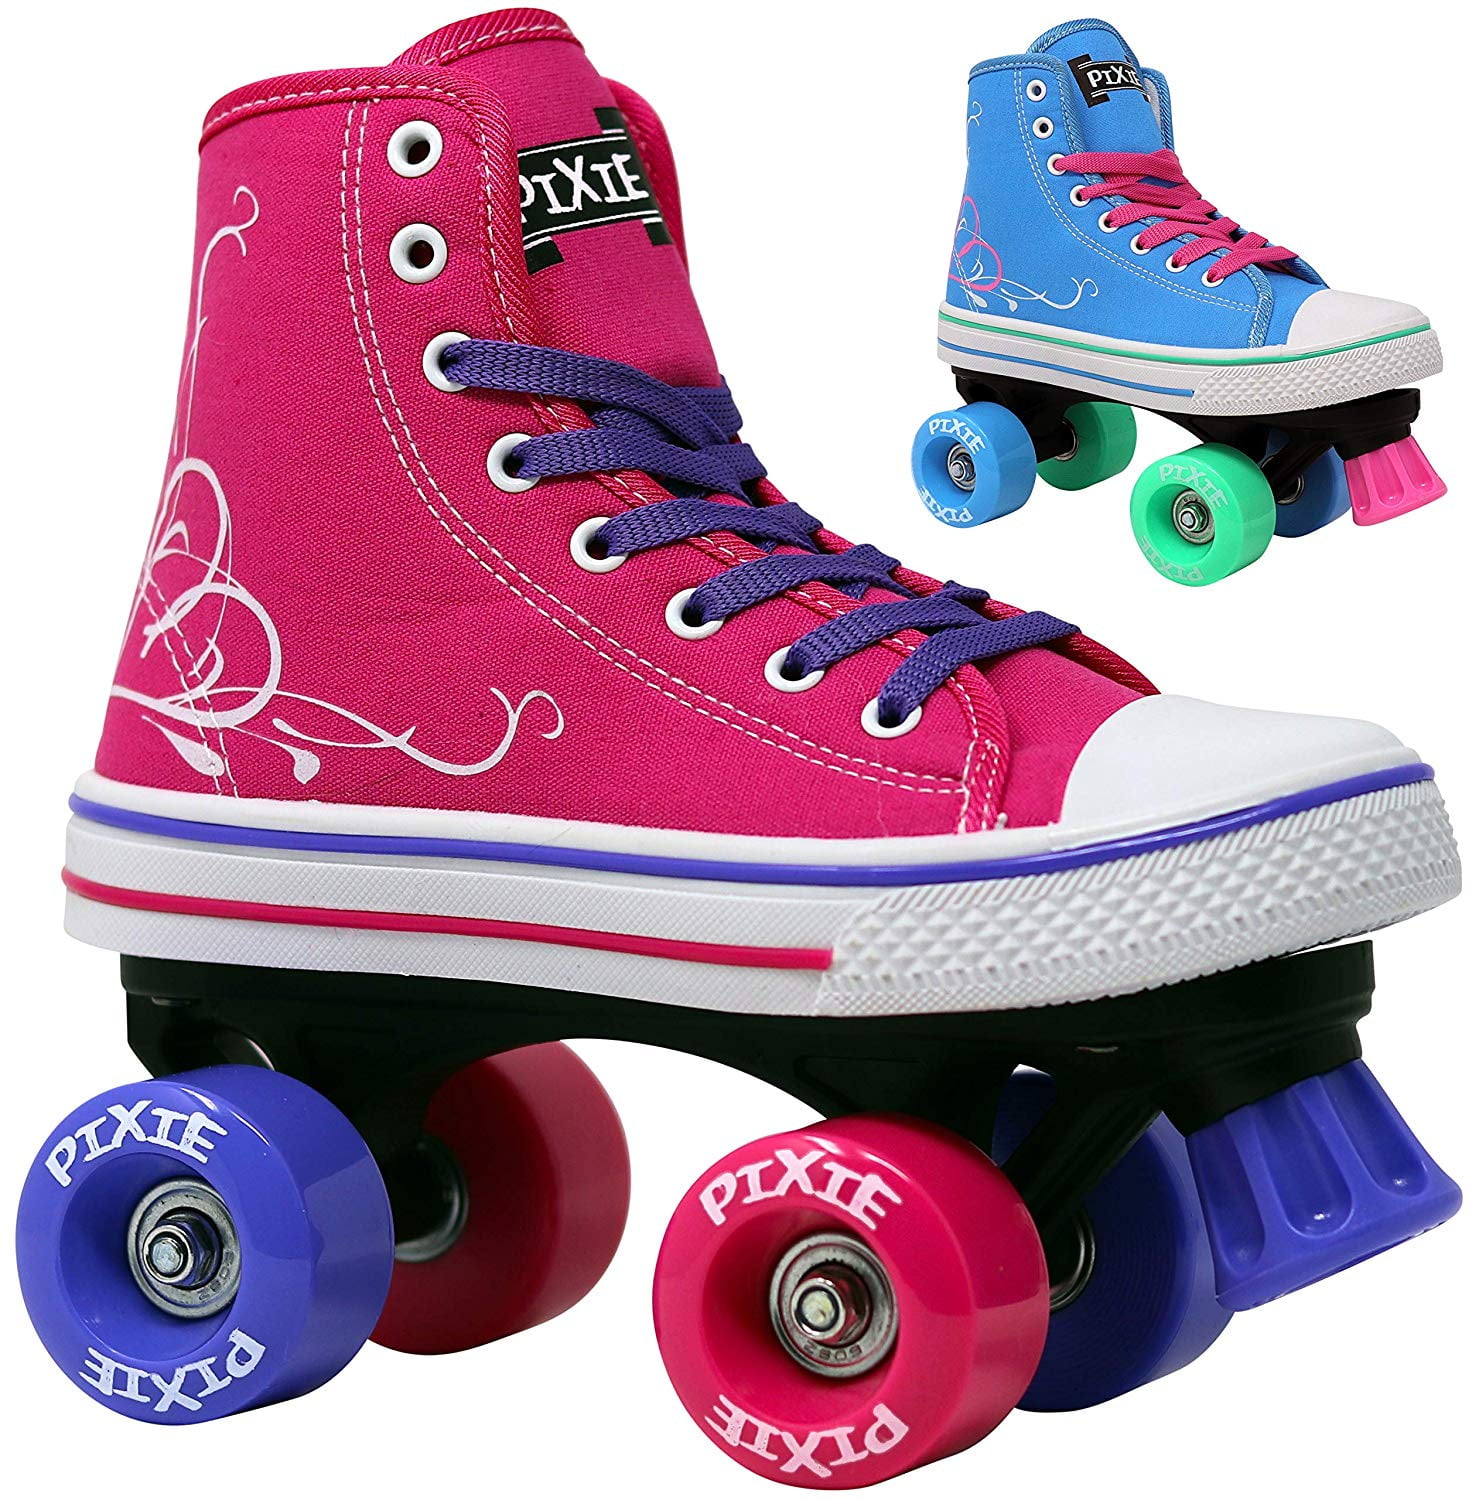 Lenexa Pixie Kids Roller Skates Sizes J10 Kids 4